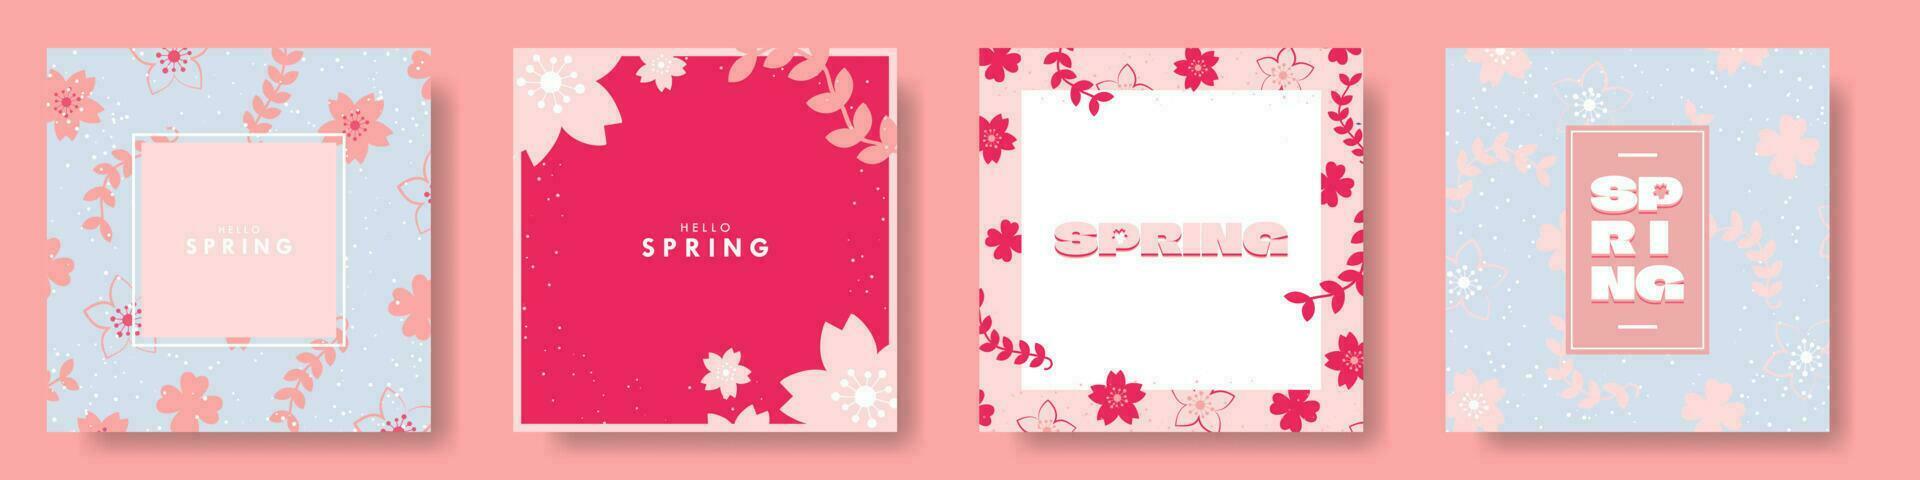 Olá Primavera cartão poster definir. na moda e colorida floral projetos. vetor ilustração. eps 10.